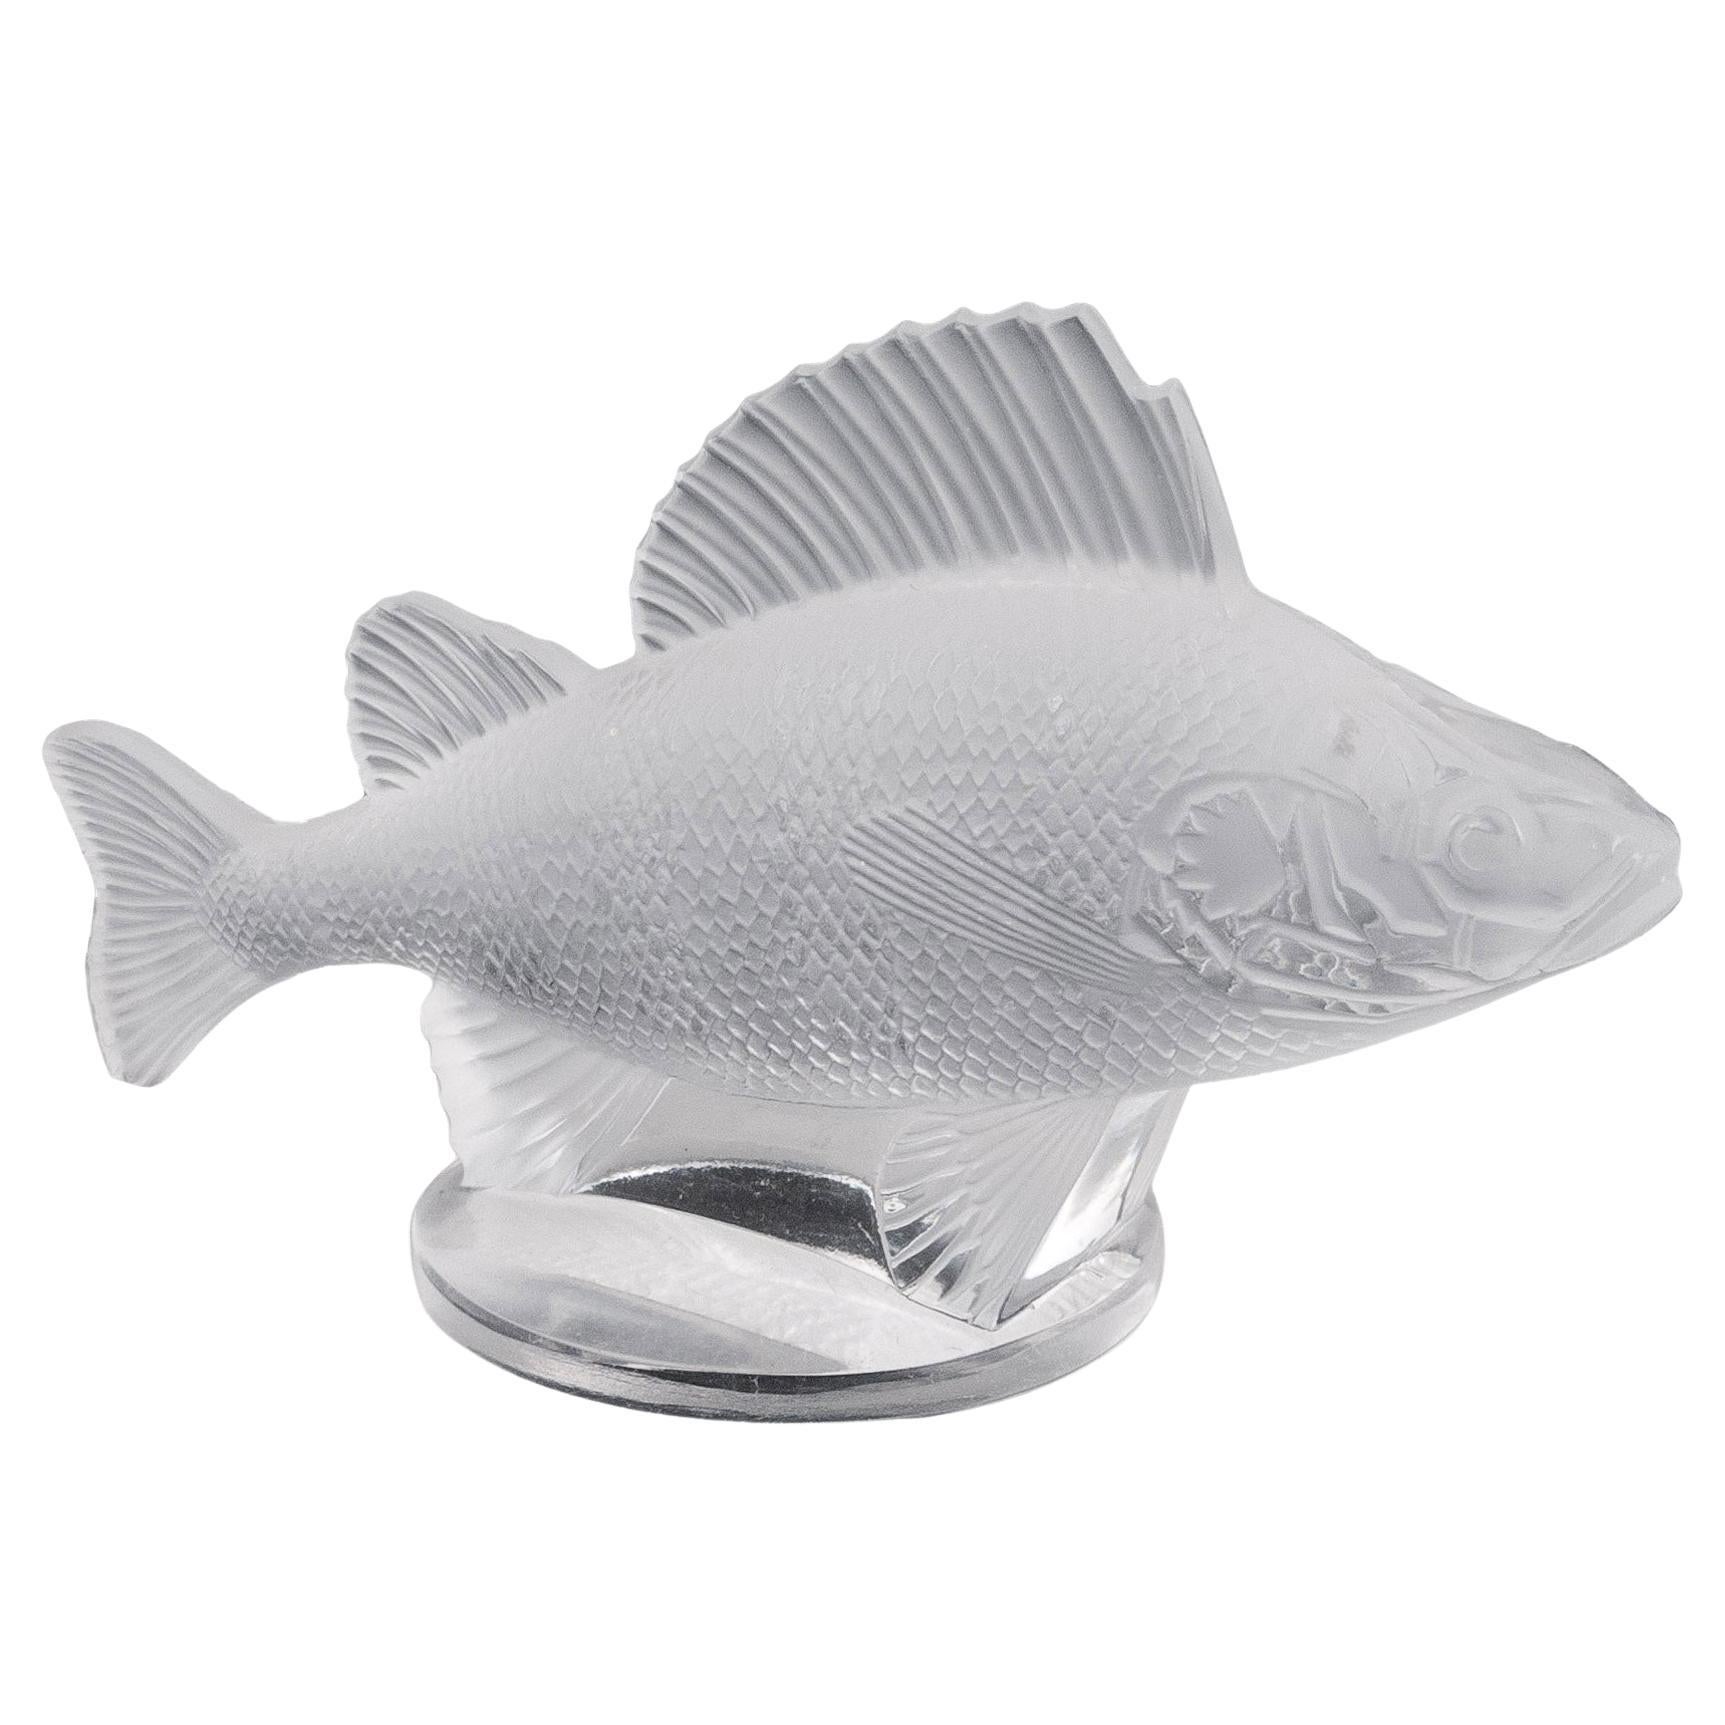 René Lalique Perche Fish Car Mascot